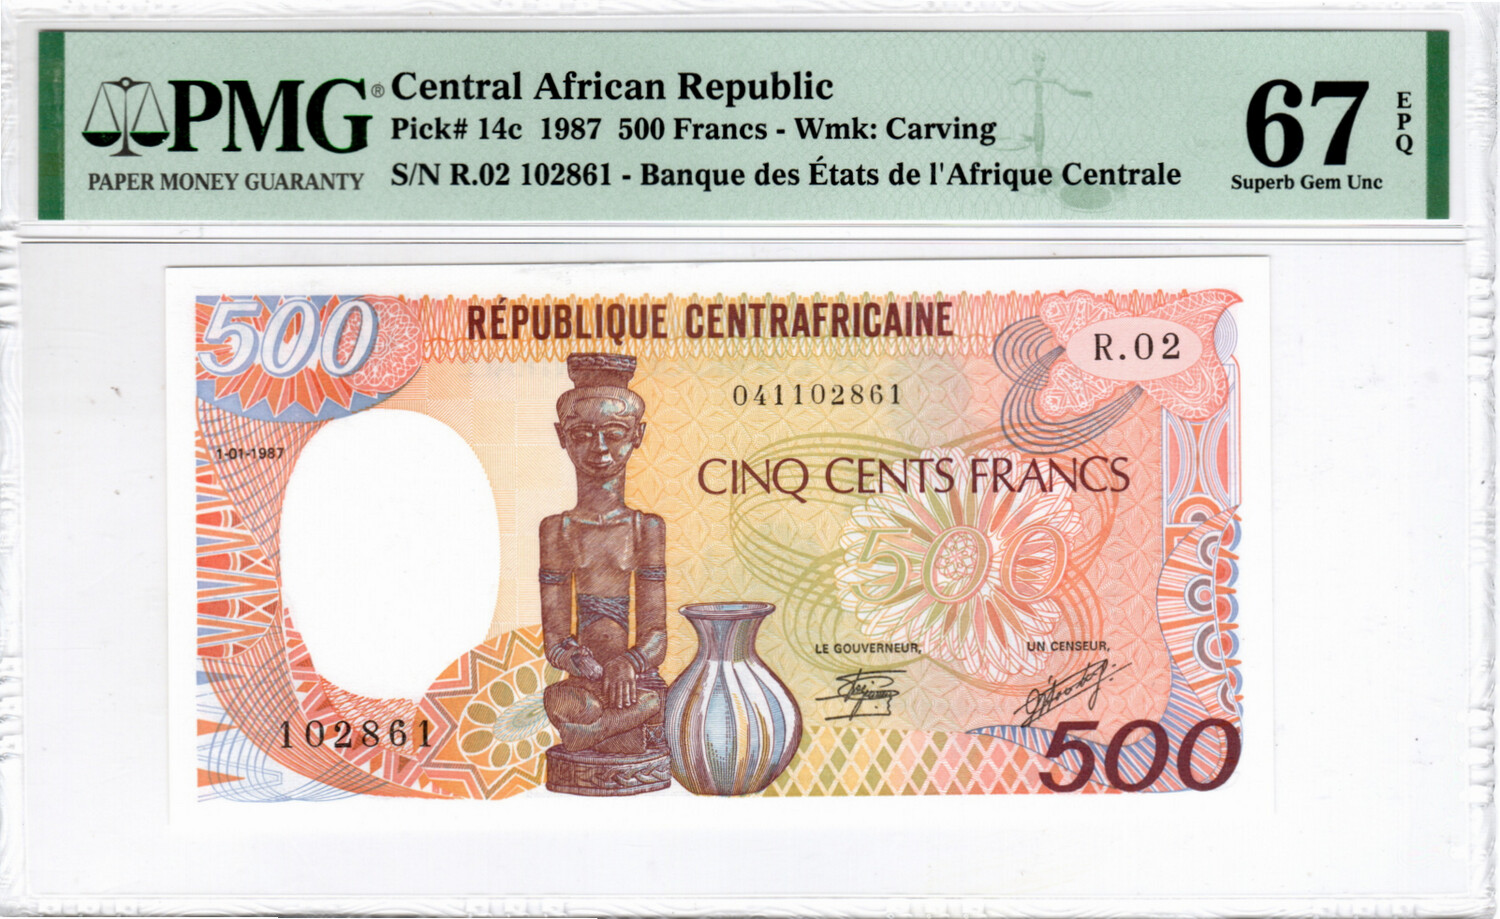 CENTRAL AFRICAN REPUBLIC 500 Francs 1987 Superb Gem UNC PMG 67 EPQ Banknotes P-14c Prefix R.02 Paper Money